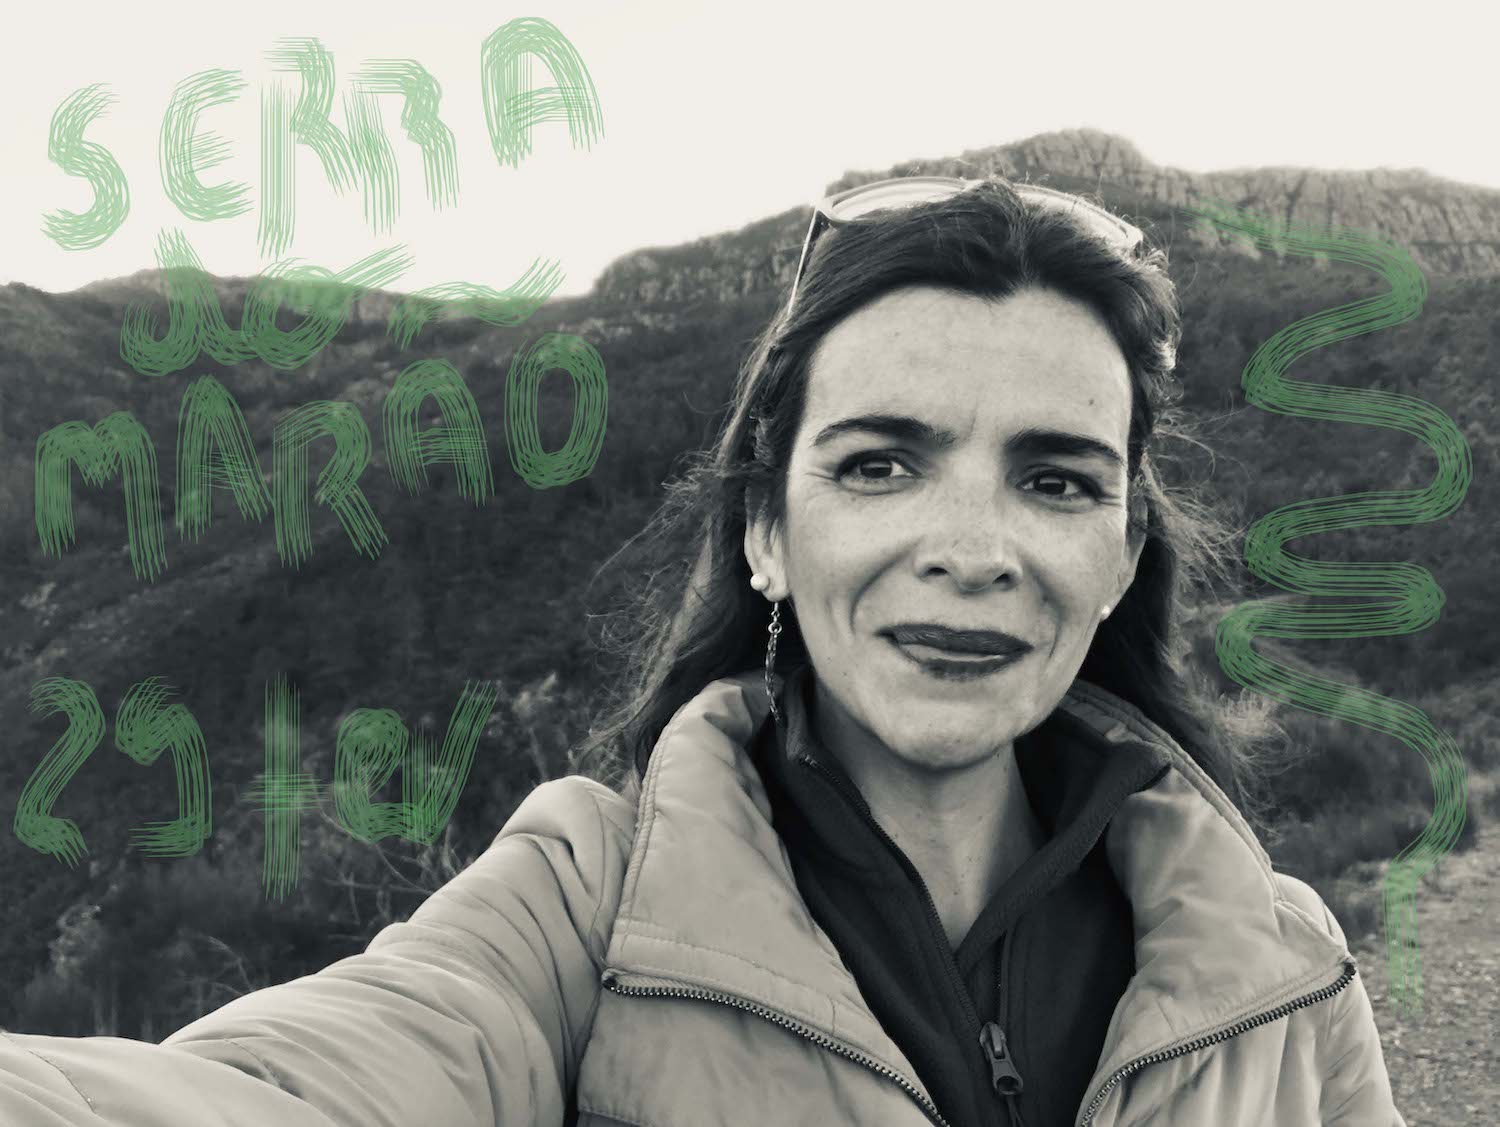 CAMINHADA time off Senhora da Serra, Marão – 29 fevereiro!